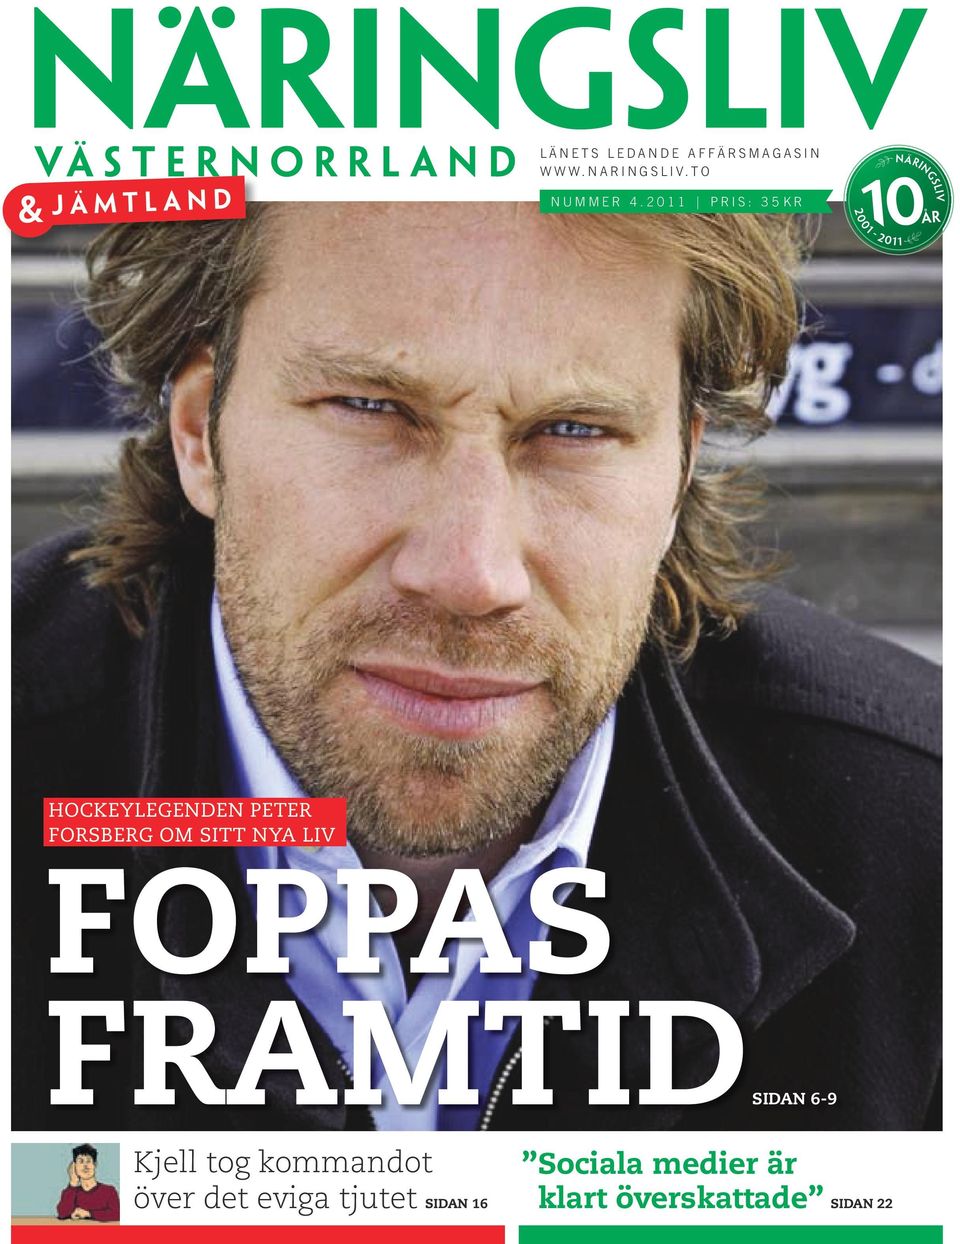 2011 Pris: 35kr 2 0 0 1-2 0 1 1 ` ÅR Hockeylegenden Peter Forsberg om sitt